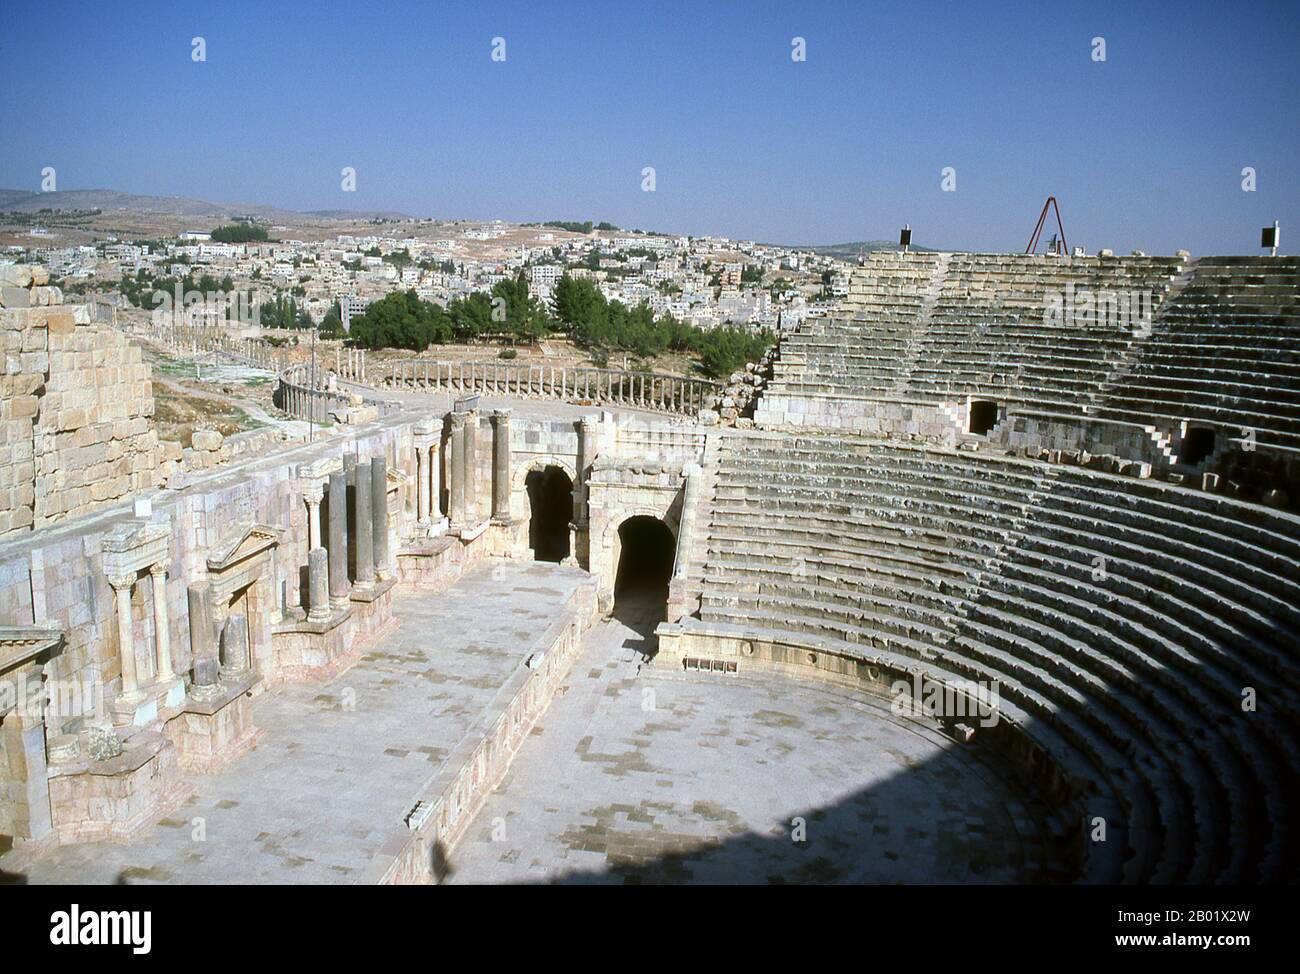 Jordanie : le Théâtre du Sud dans l'ancienne ville gréco-romaine de Jerash. Jerash est le site des ruines de la ville gréco-romaine de Gerasa, également appelée Antioche sur le fleuve d'Or. Jerash est considérée comme l'une des villes romaines les plus importantes et les mieux préservées du proche-Orient. C'était une ville de la Décapole. Des fouilles récentes montrent que Jerash était déjà habité pendant l'âge du bronze (3200-1200 av. J.-C.). Après la conquête romaine en 63 av. J.-C., Jerash et les terres qui l'entourent ont été annexées par la province romaine de Syrie, et ont rejoint plus tard les villes de la Décapole. Banque D'Images